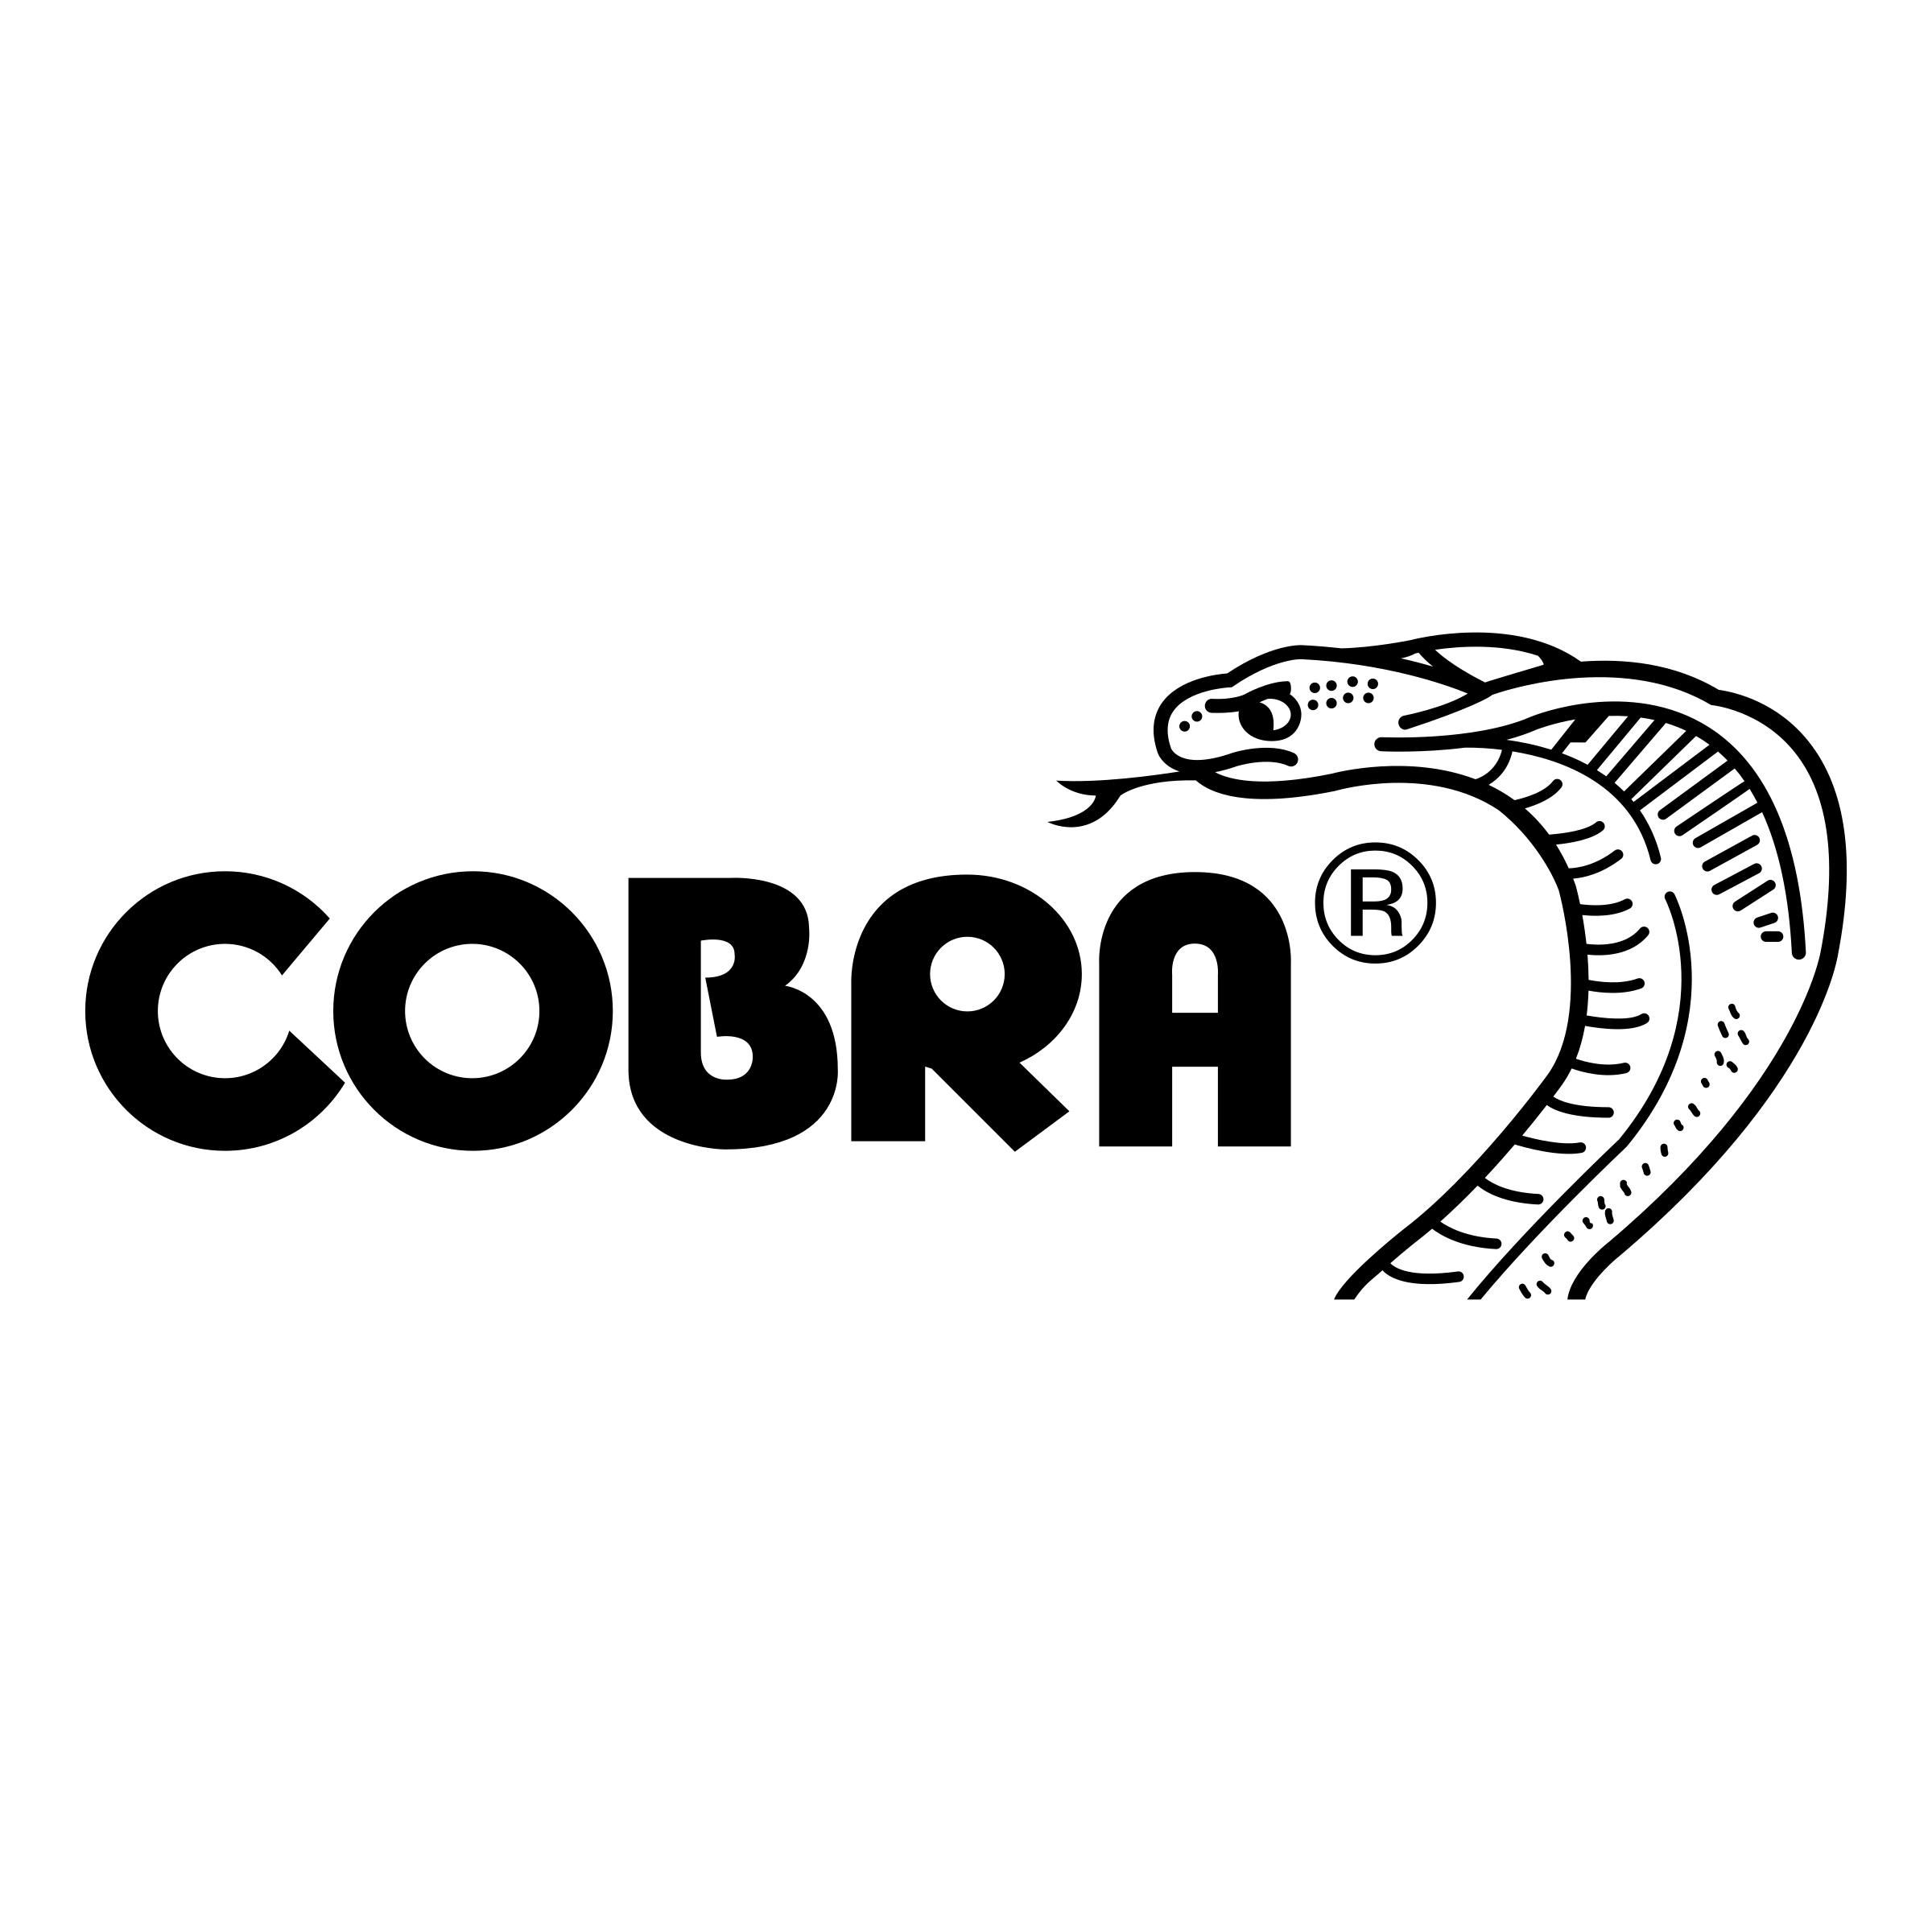 Cobra Logo - Cobra Logo PNG Transparent & SVG Vector - Freebie Supply